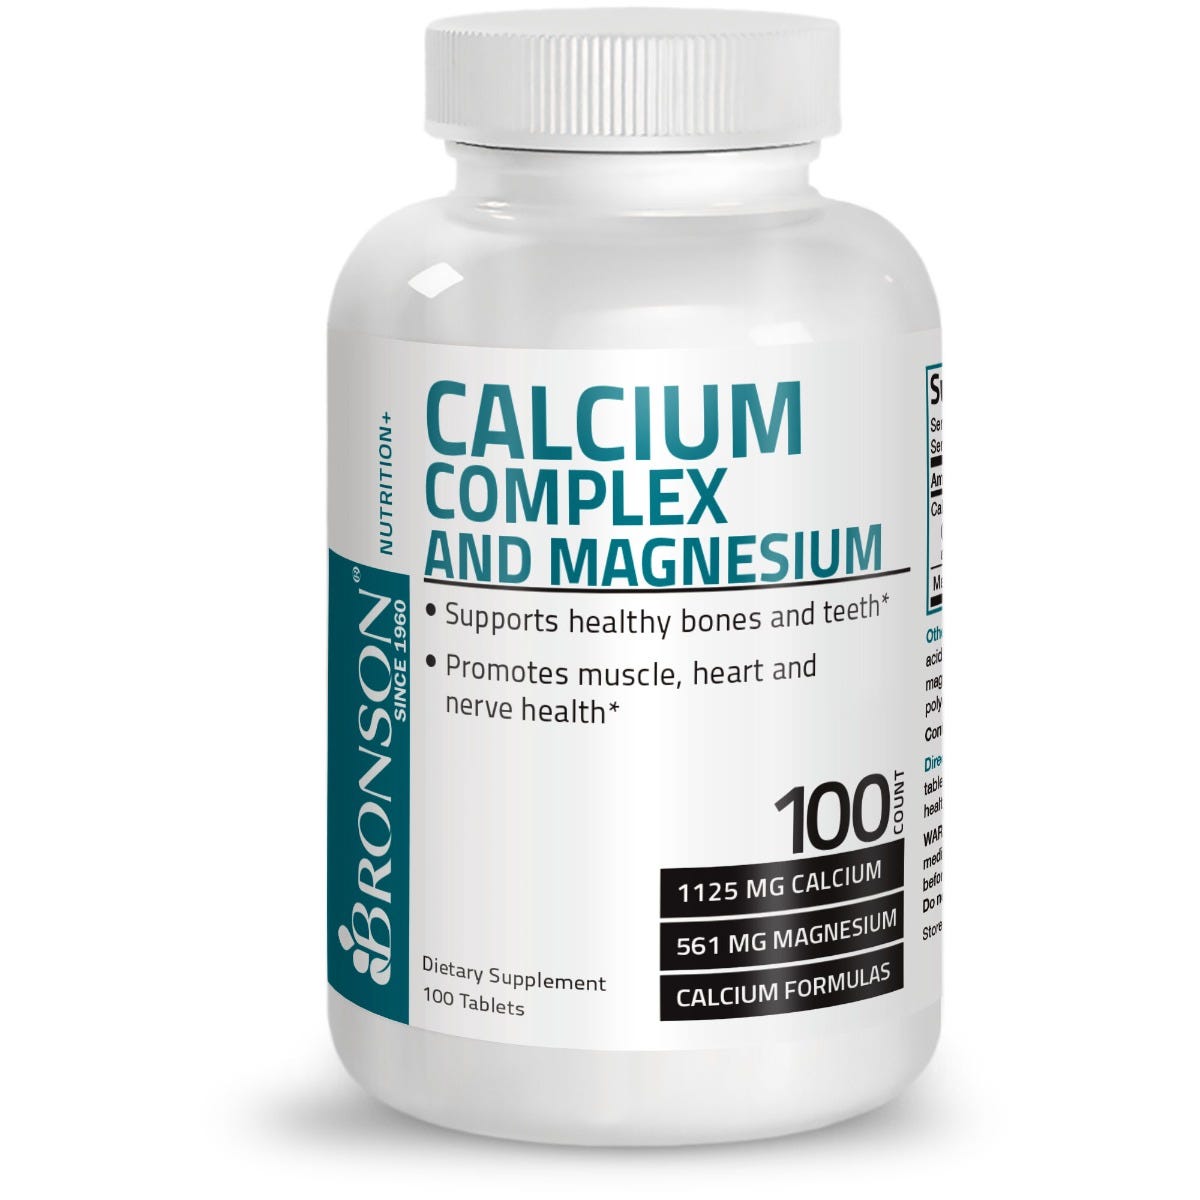 Calcium Complex with Magnesium view 1 of 6